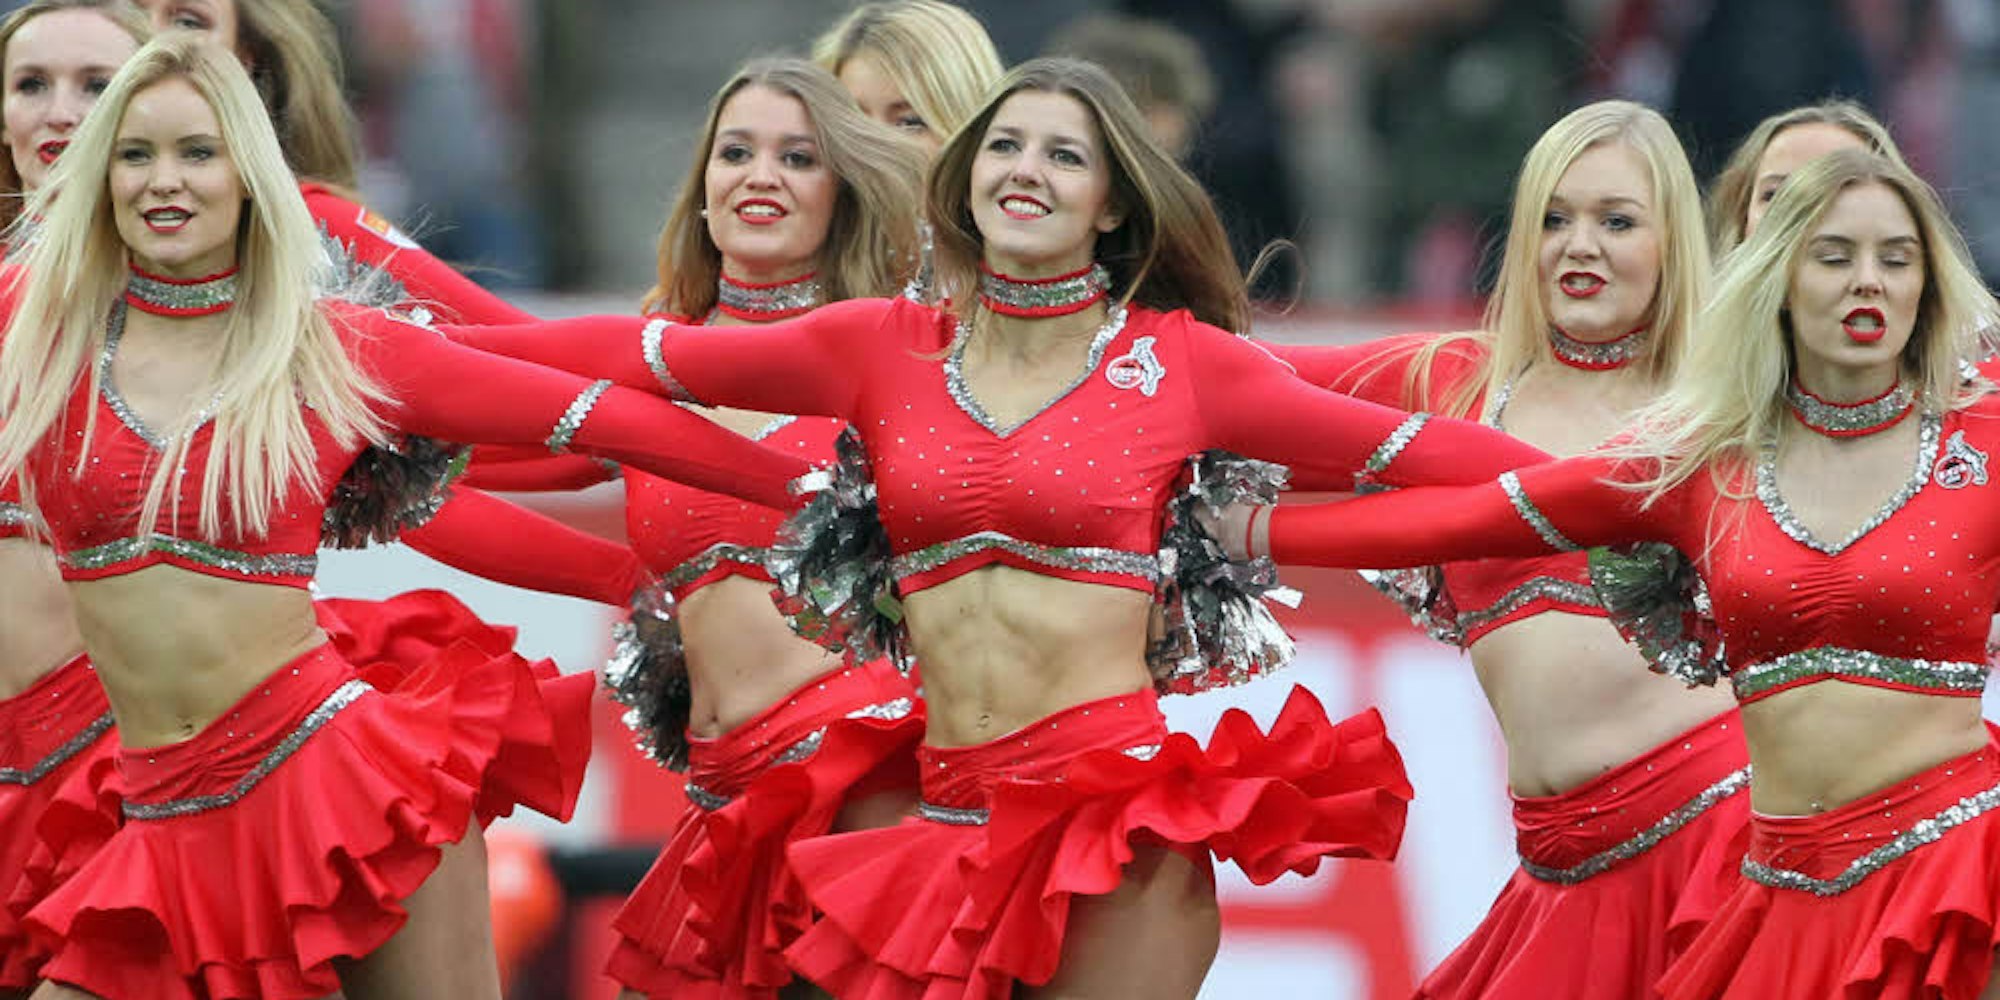 Tanzen für ihren Verein: Melina Schnirch (2.v.r.) und die Cheerleader geben alles für den 1. FC Köln.